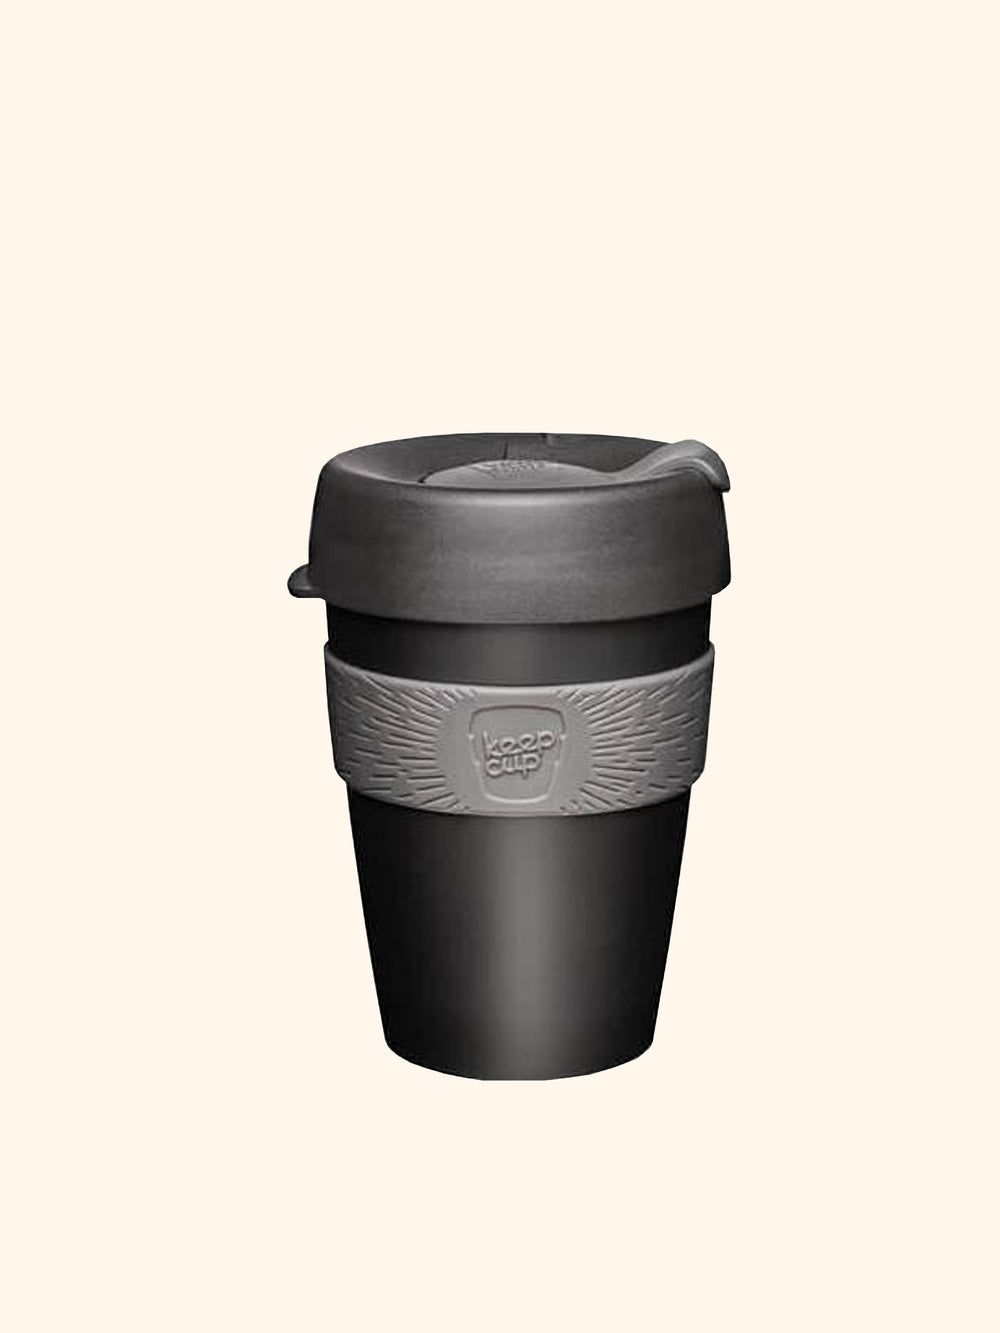 KEEPCUP - PLASTIC REUSABLE COFFEE MUG 12oz- Buy Freshly Roasted Coffee Beans Online - Blue Tokai Coffee Roasters